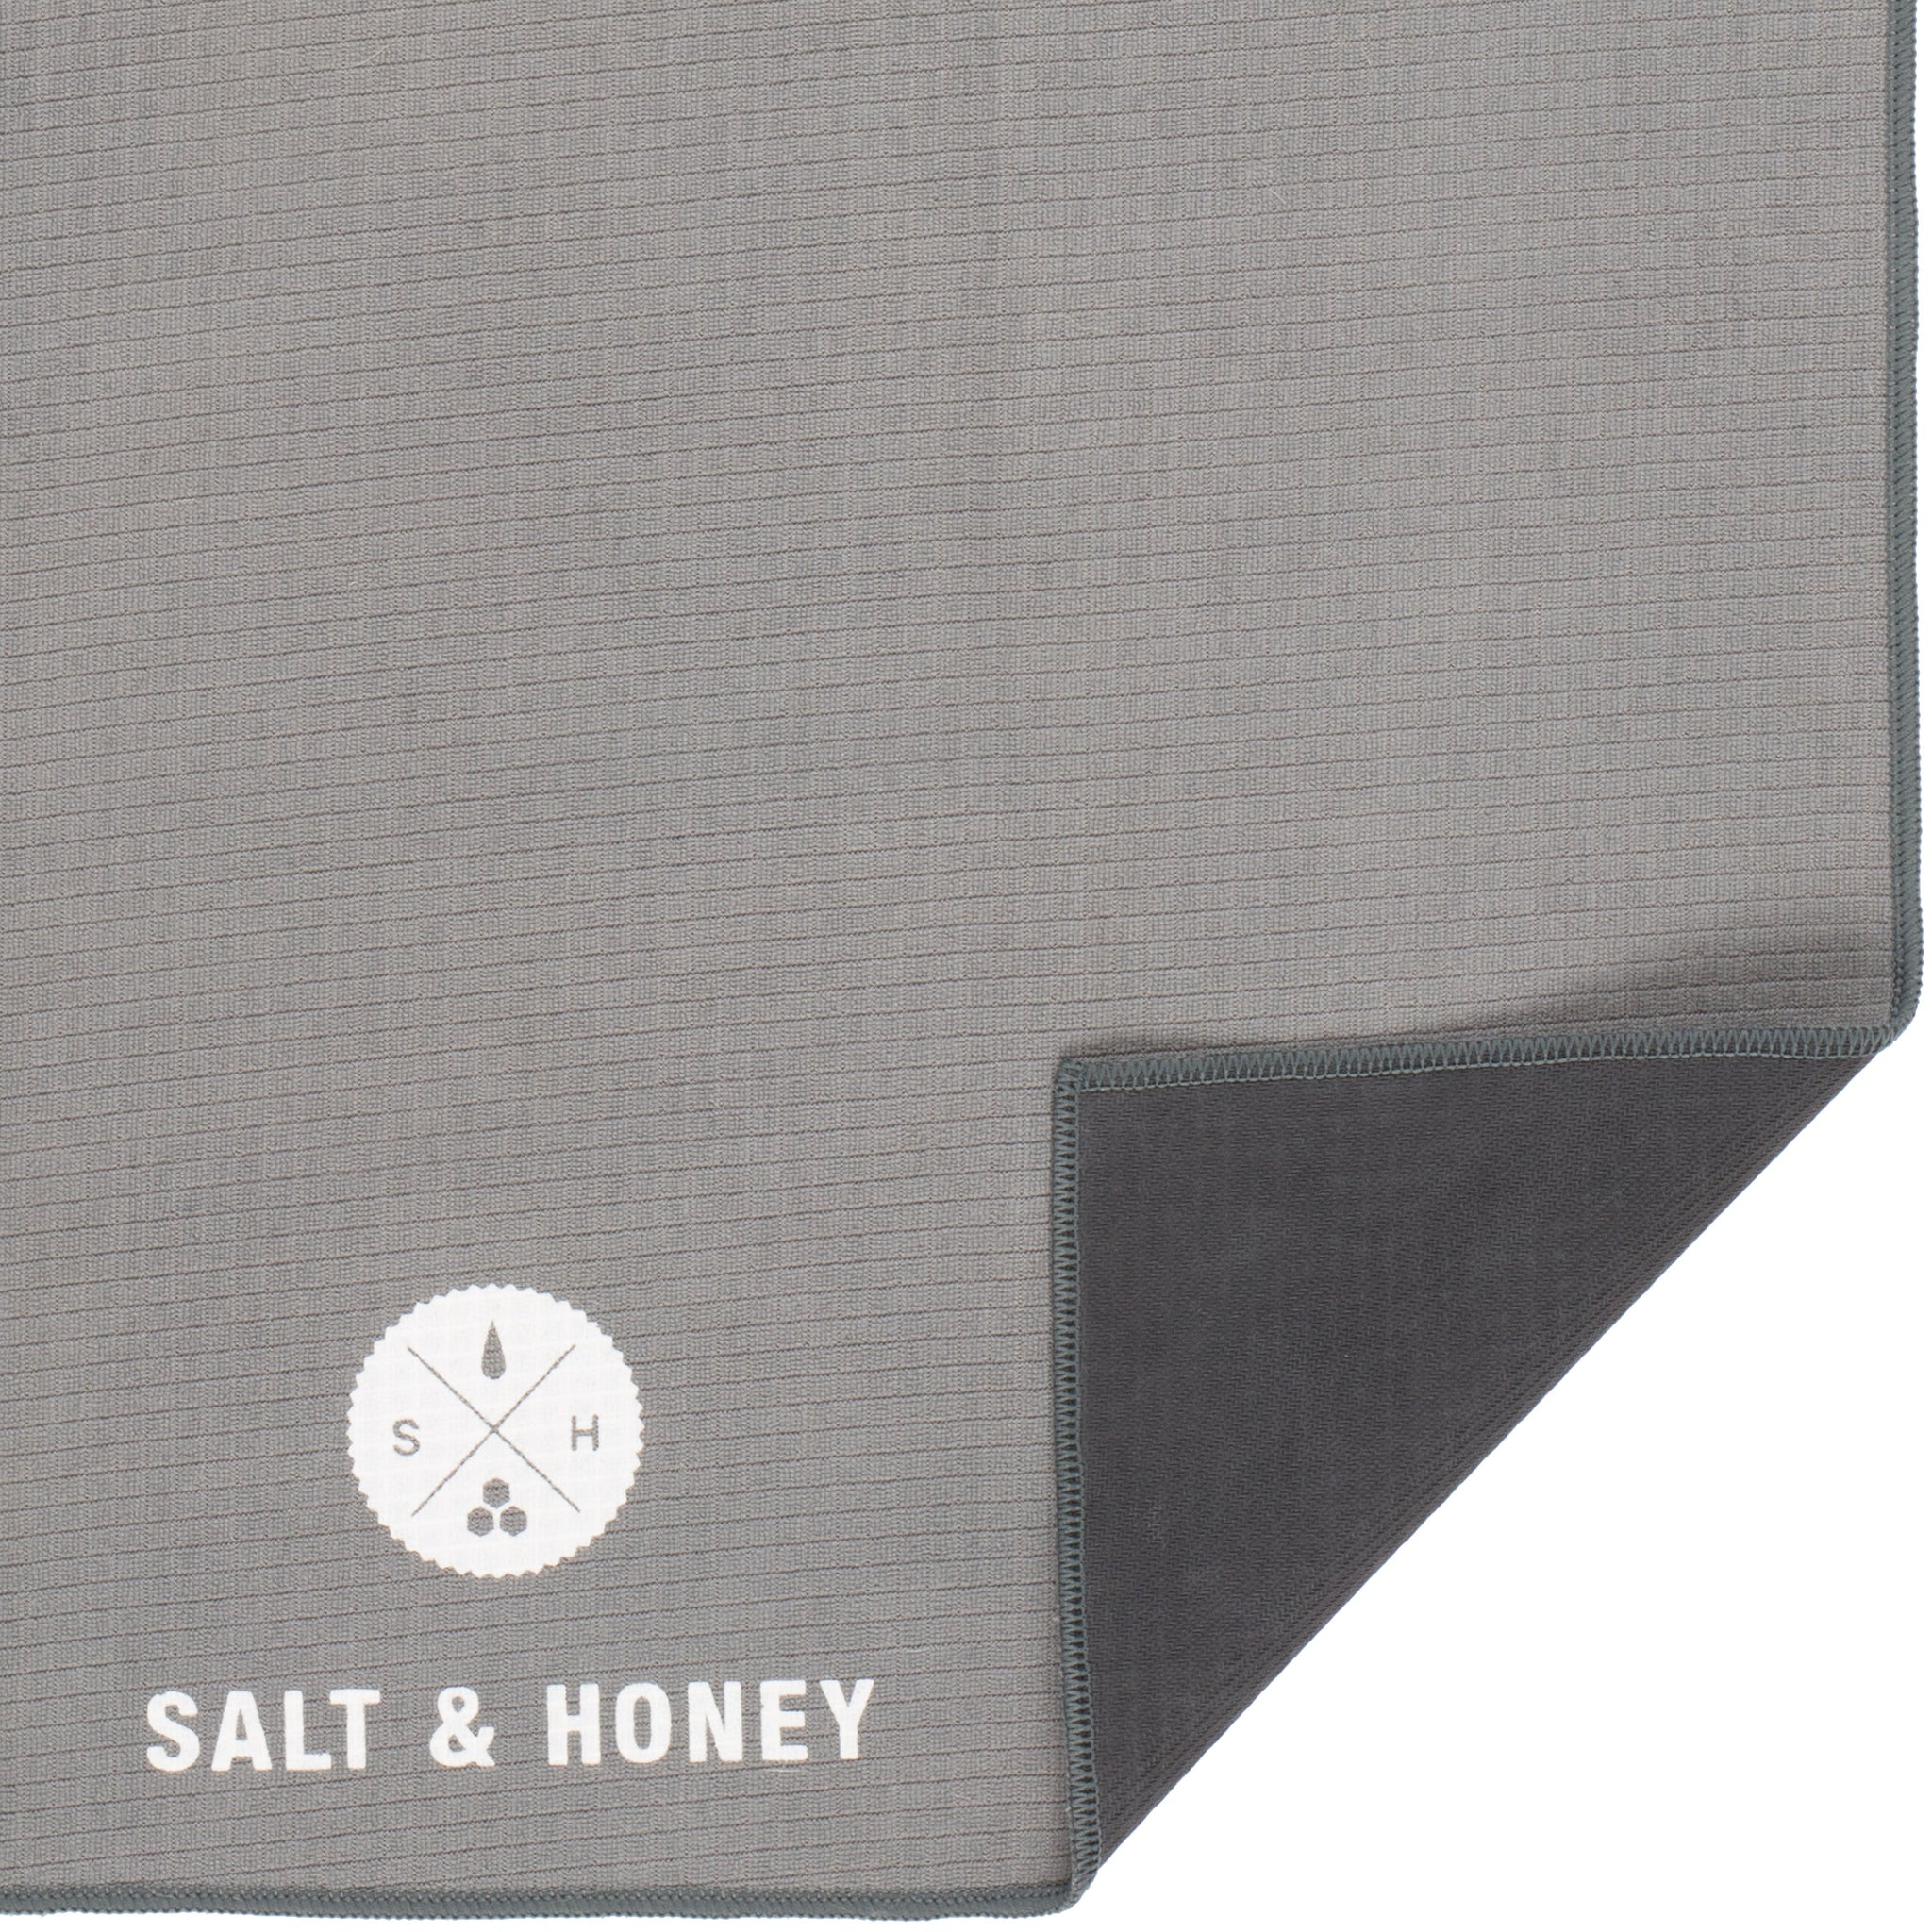  Salt & Honey Non-Slip Pilates Reformer Mat Towel